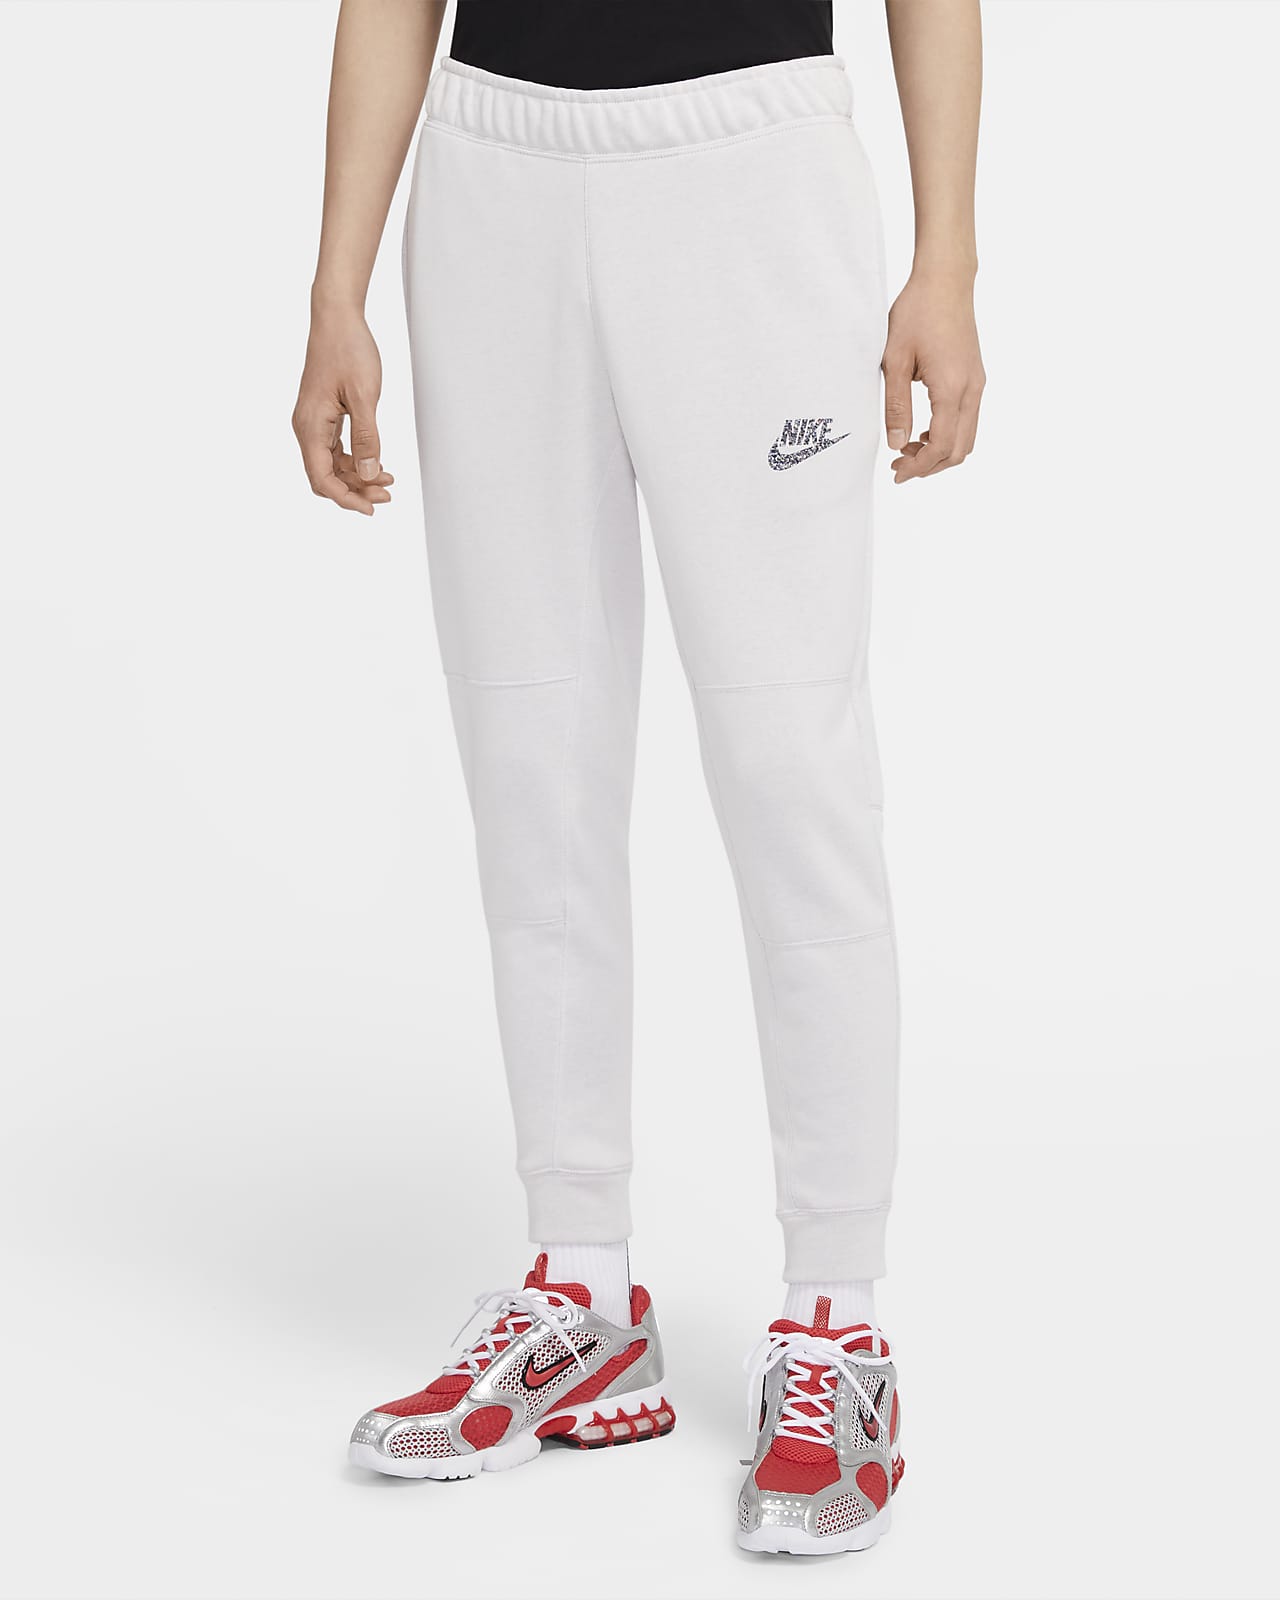 Nike Sportswear Men's Joggers. Nike FI